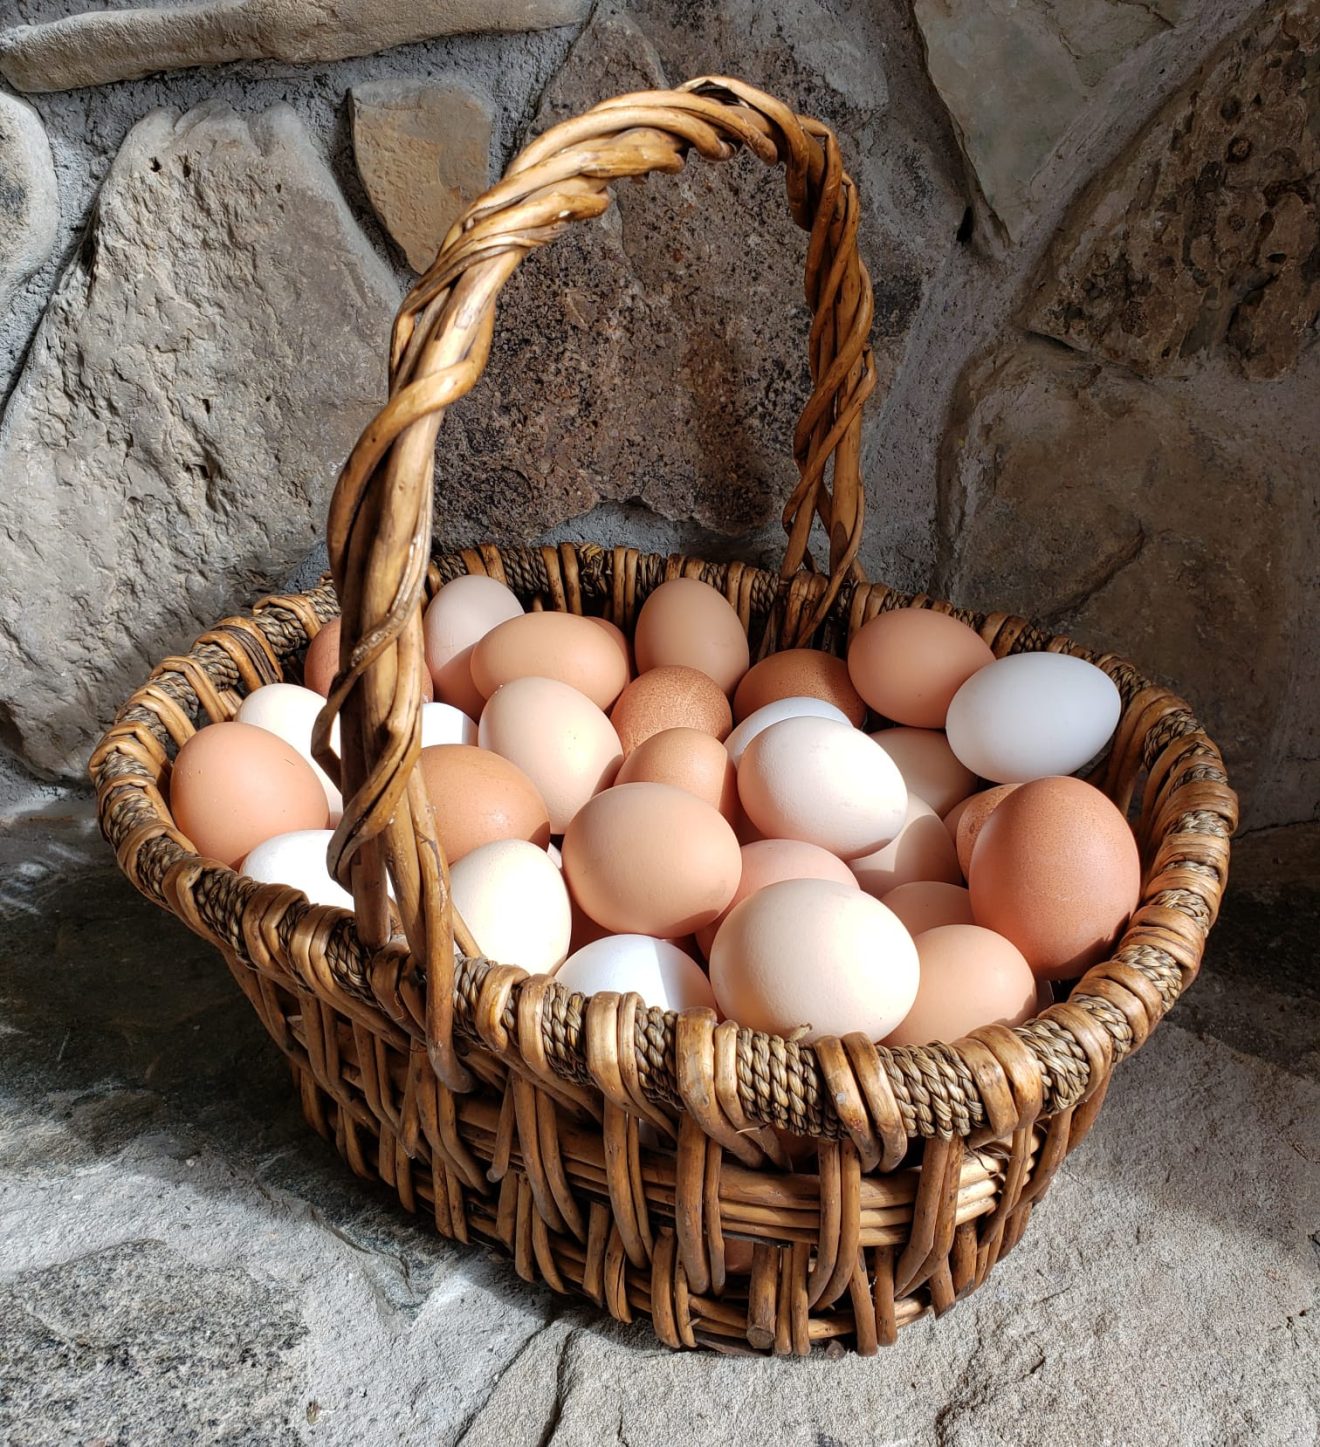 Farm fresh eggs